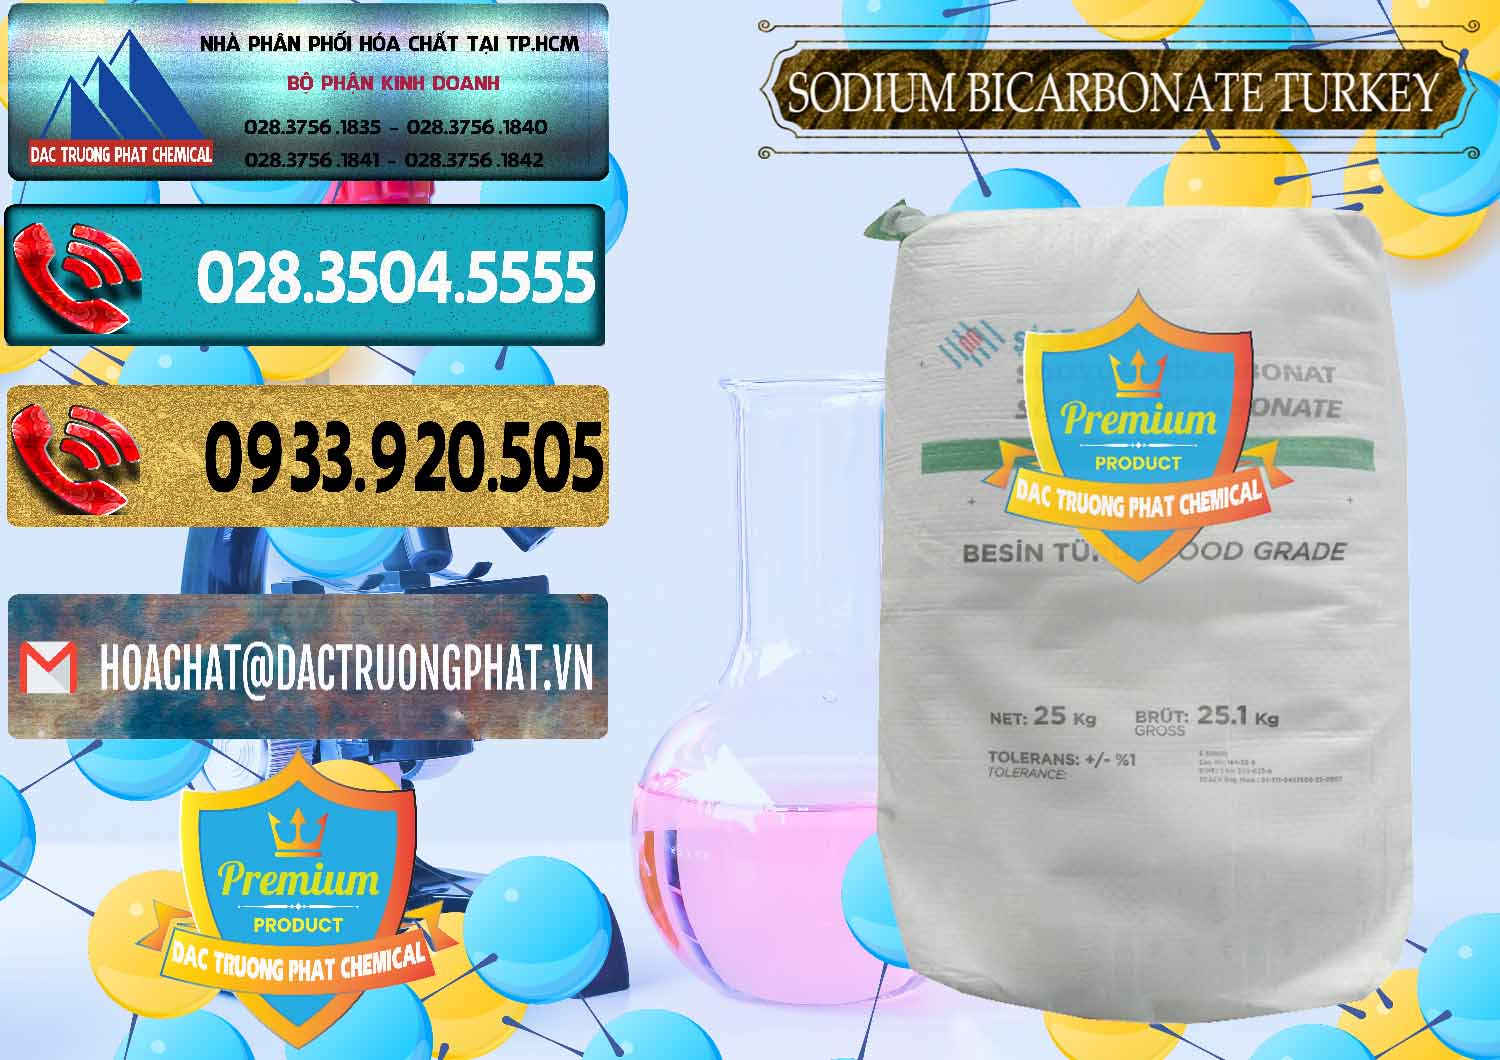 Công ty kinh doanh và bán Sodium Bicarbonate – Bicar NaHCO3 Food Grade Thổ Nhĩ Kỳ Turkey - 0219 - Cty phân phối và bán hóa chất tại TP.HCM - hoachatdetnhuom.com